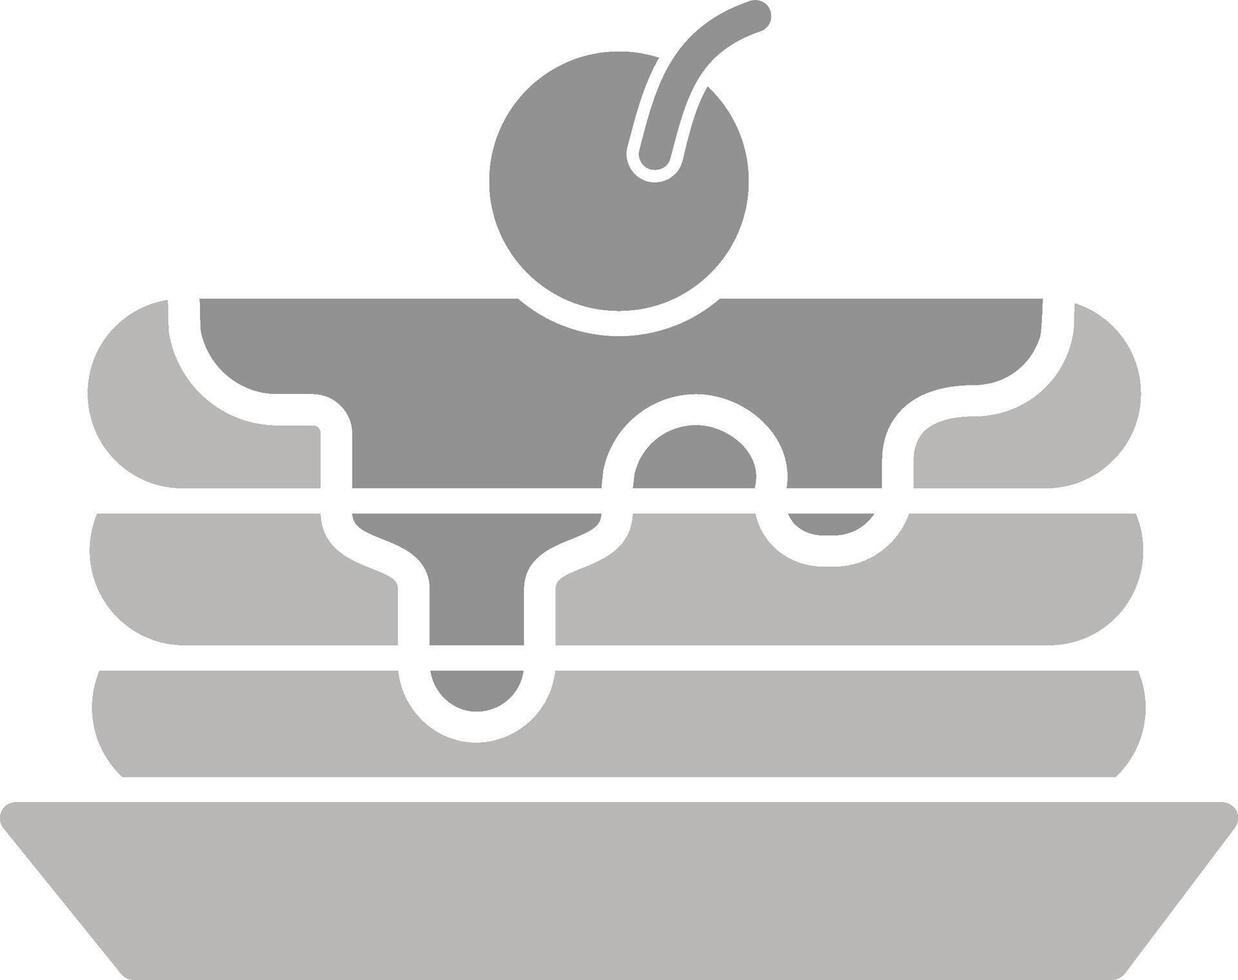 pancake vettore icona